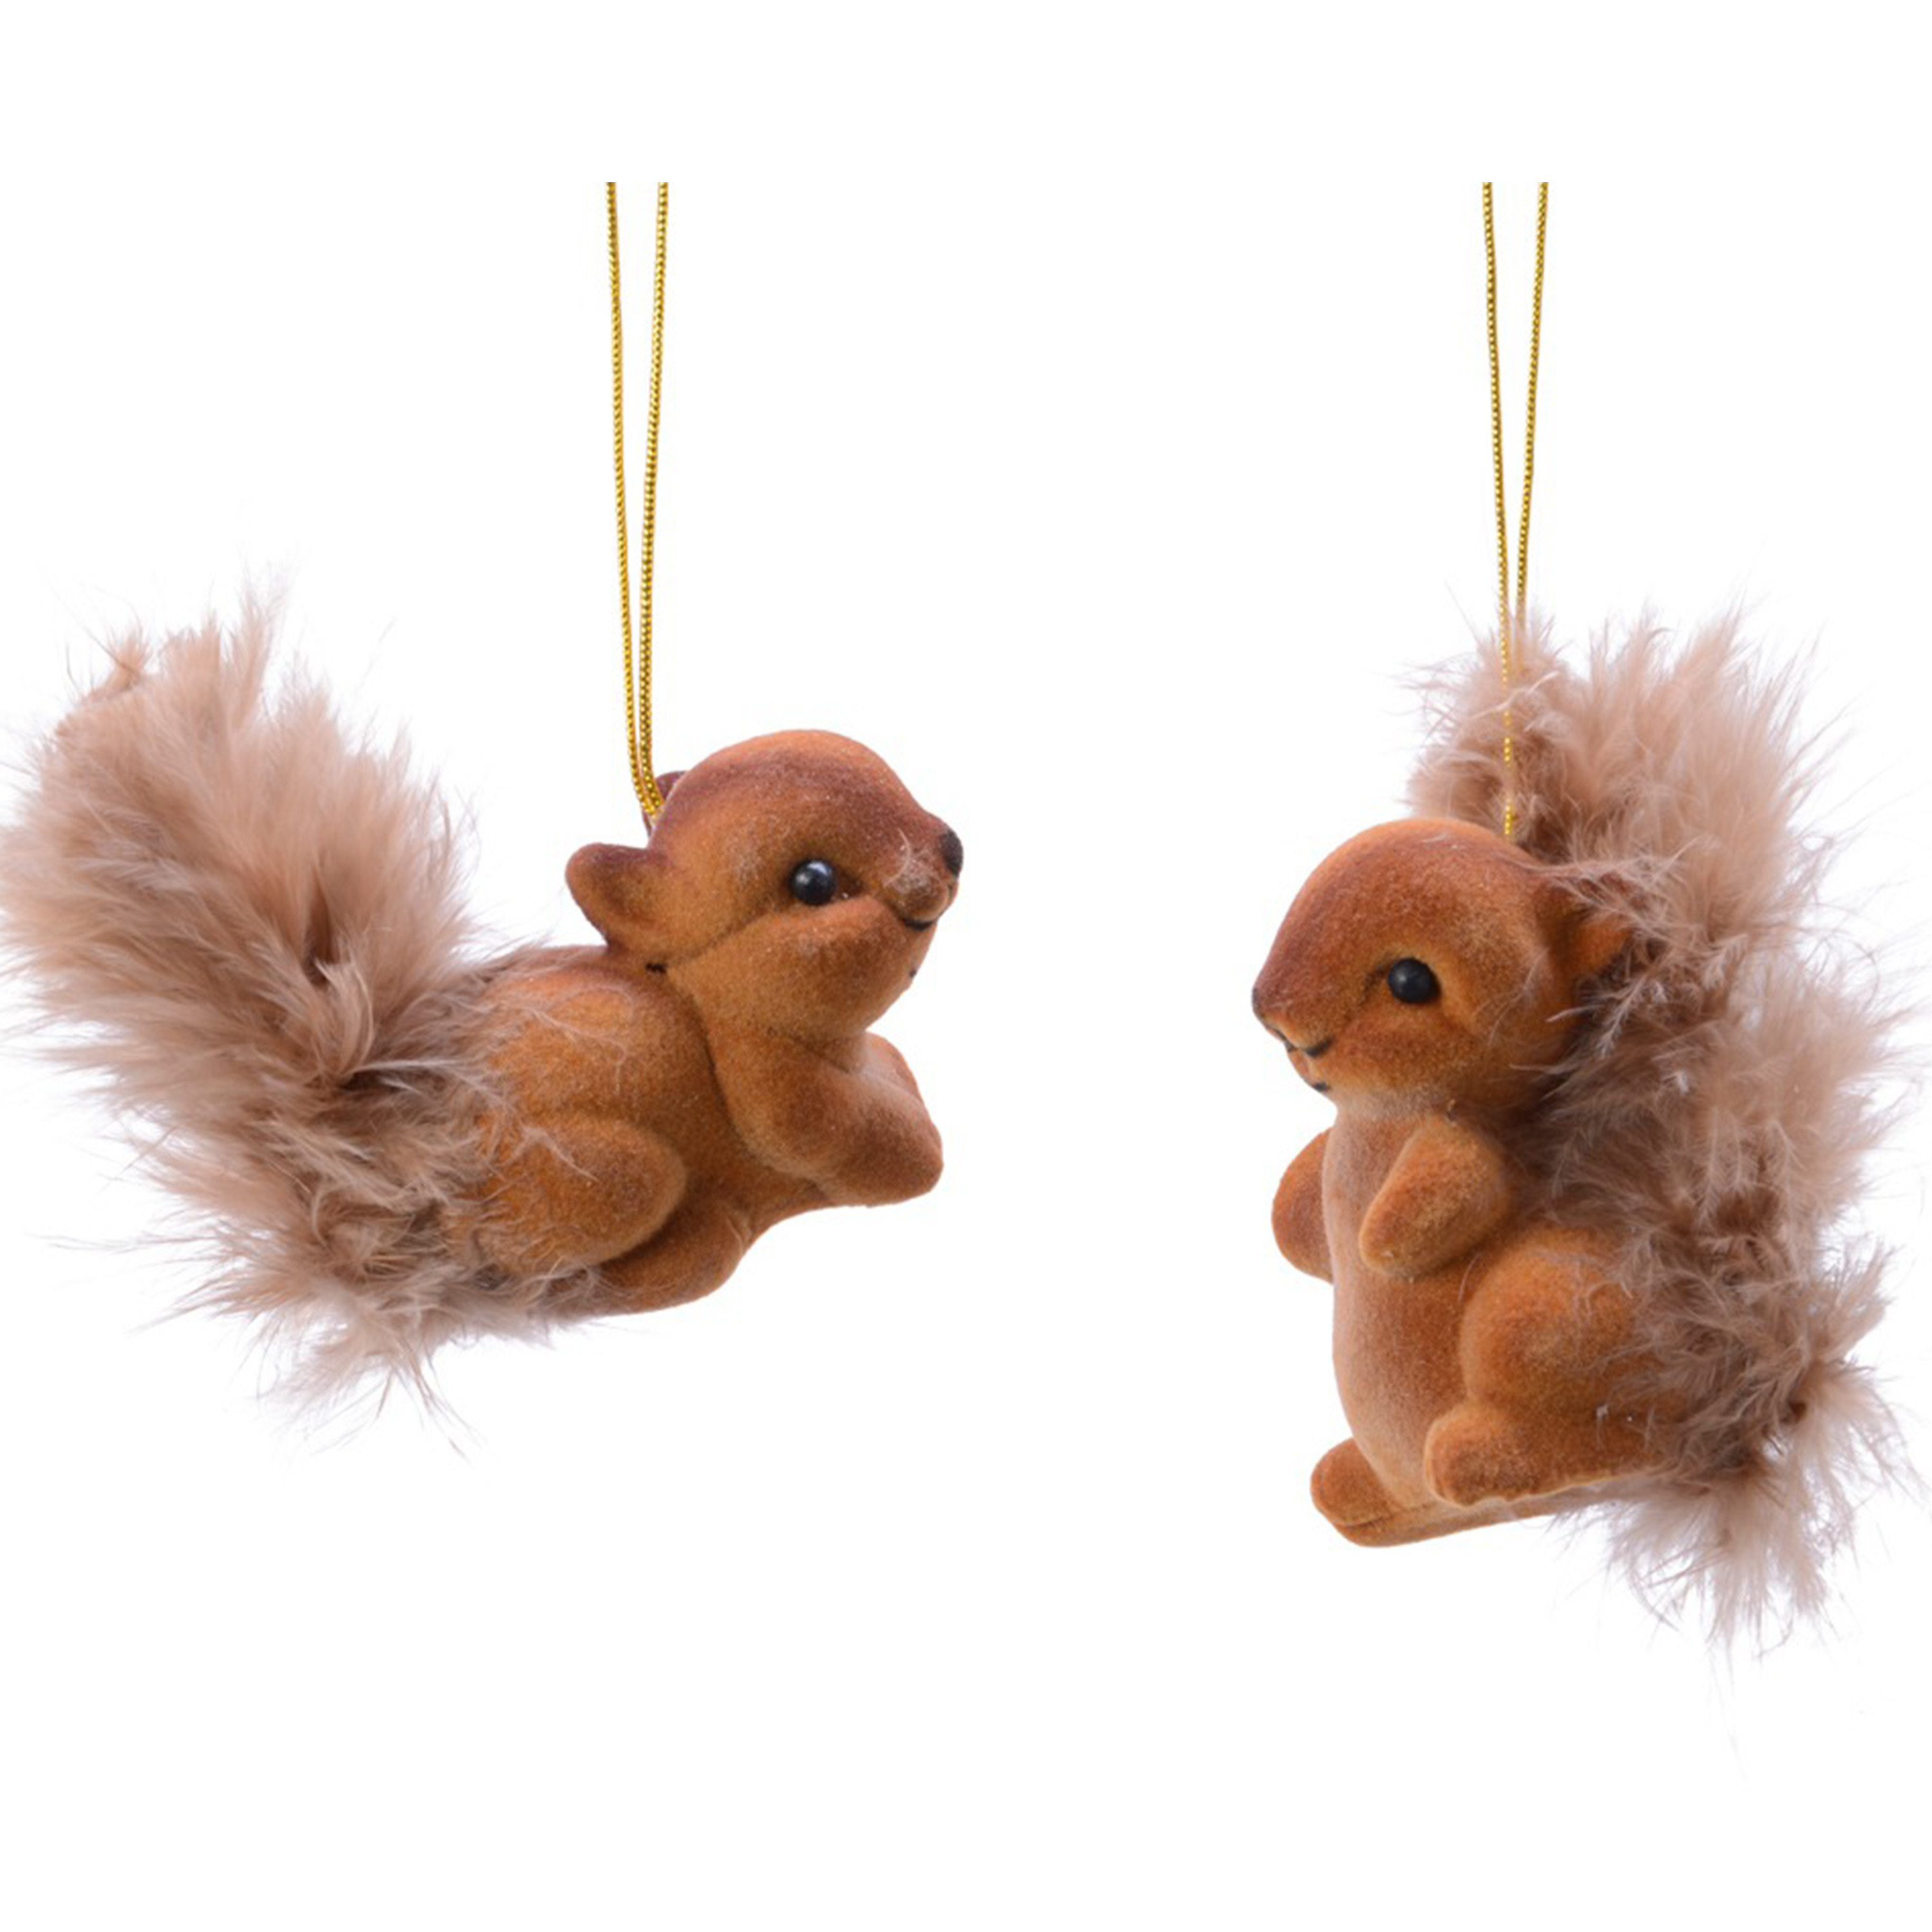 2x Bruine eekhoorns kerstversiering hangdecoraties 6 cm